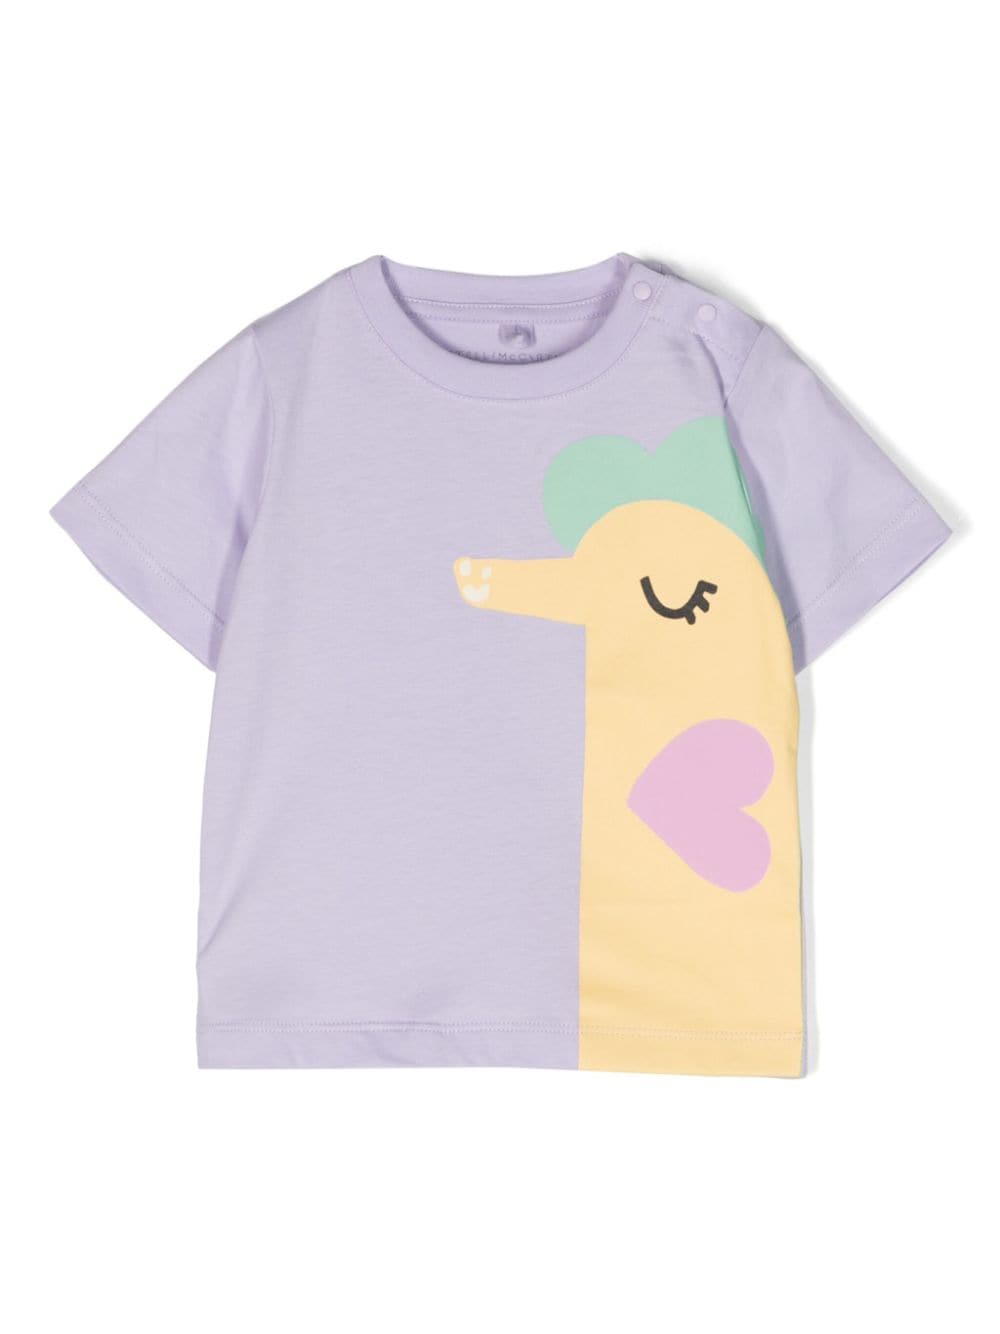 T-shirt nouveau-né lilas